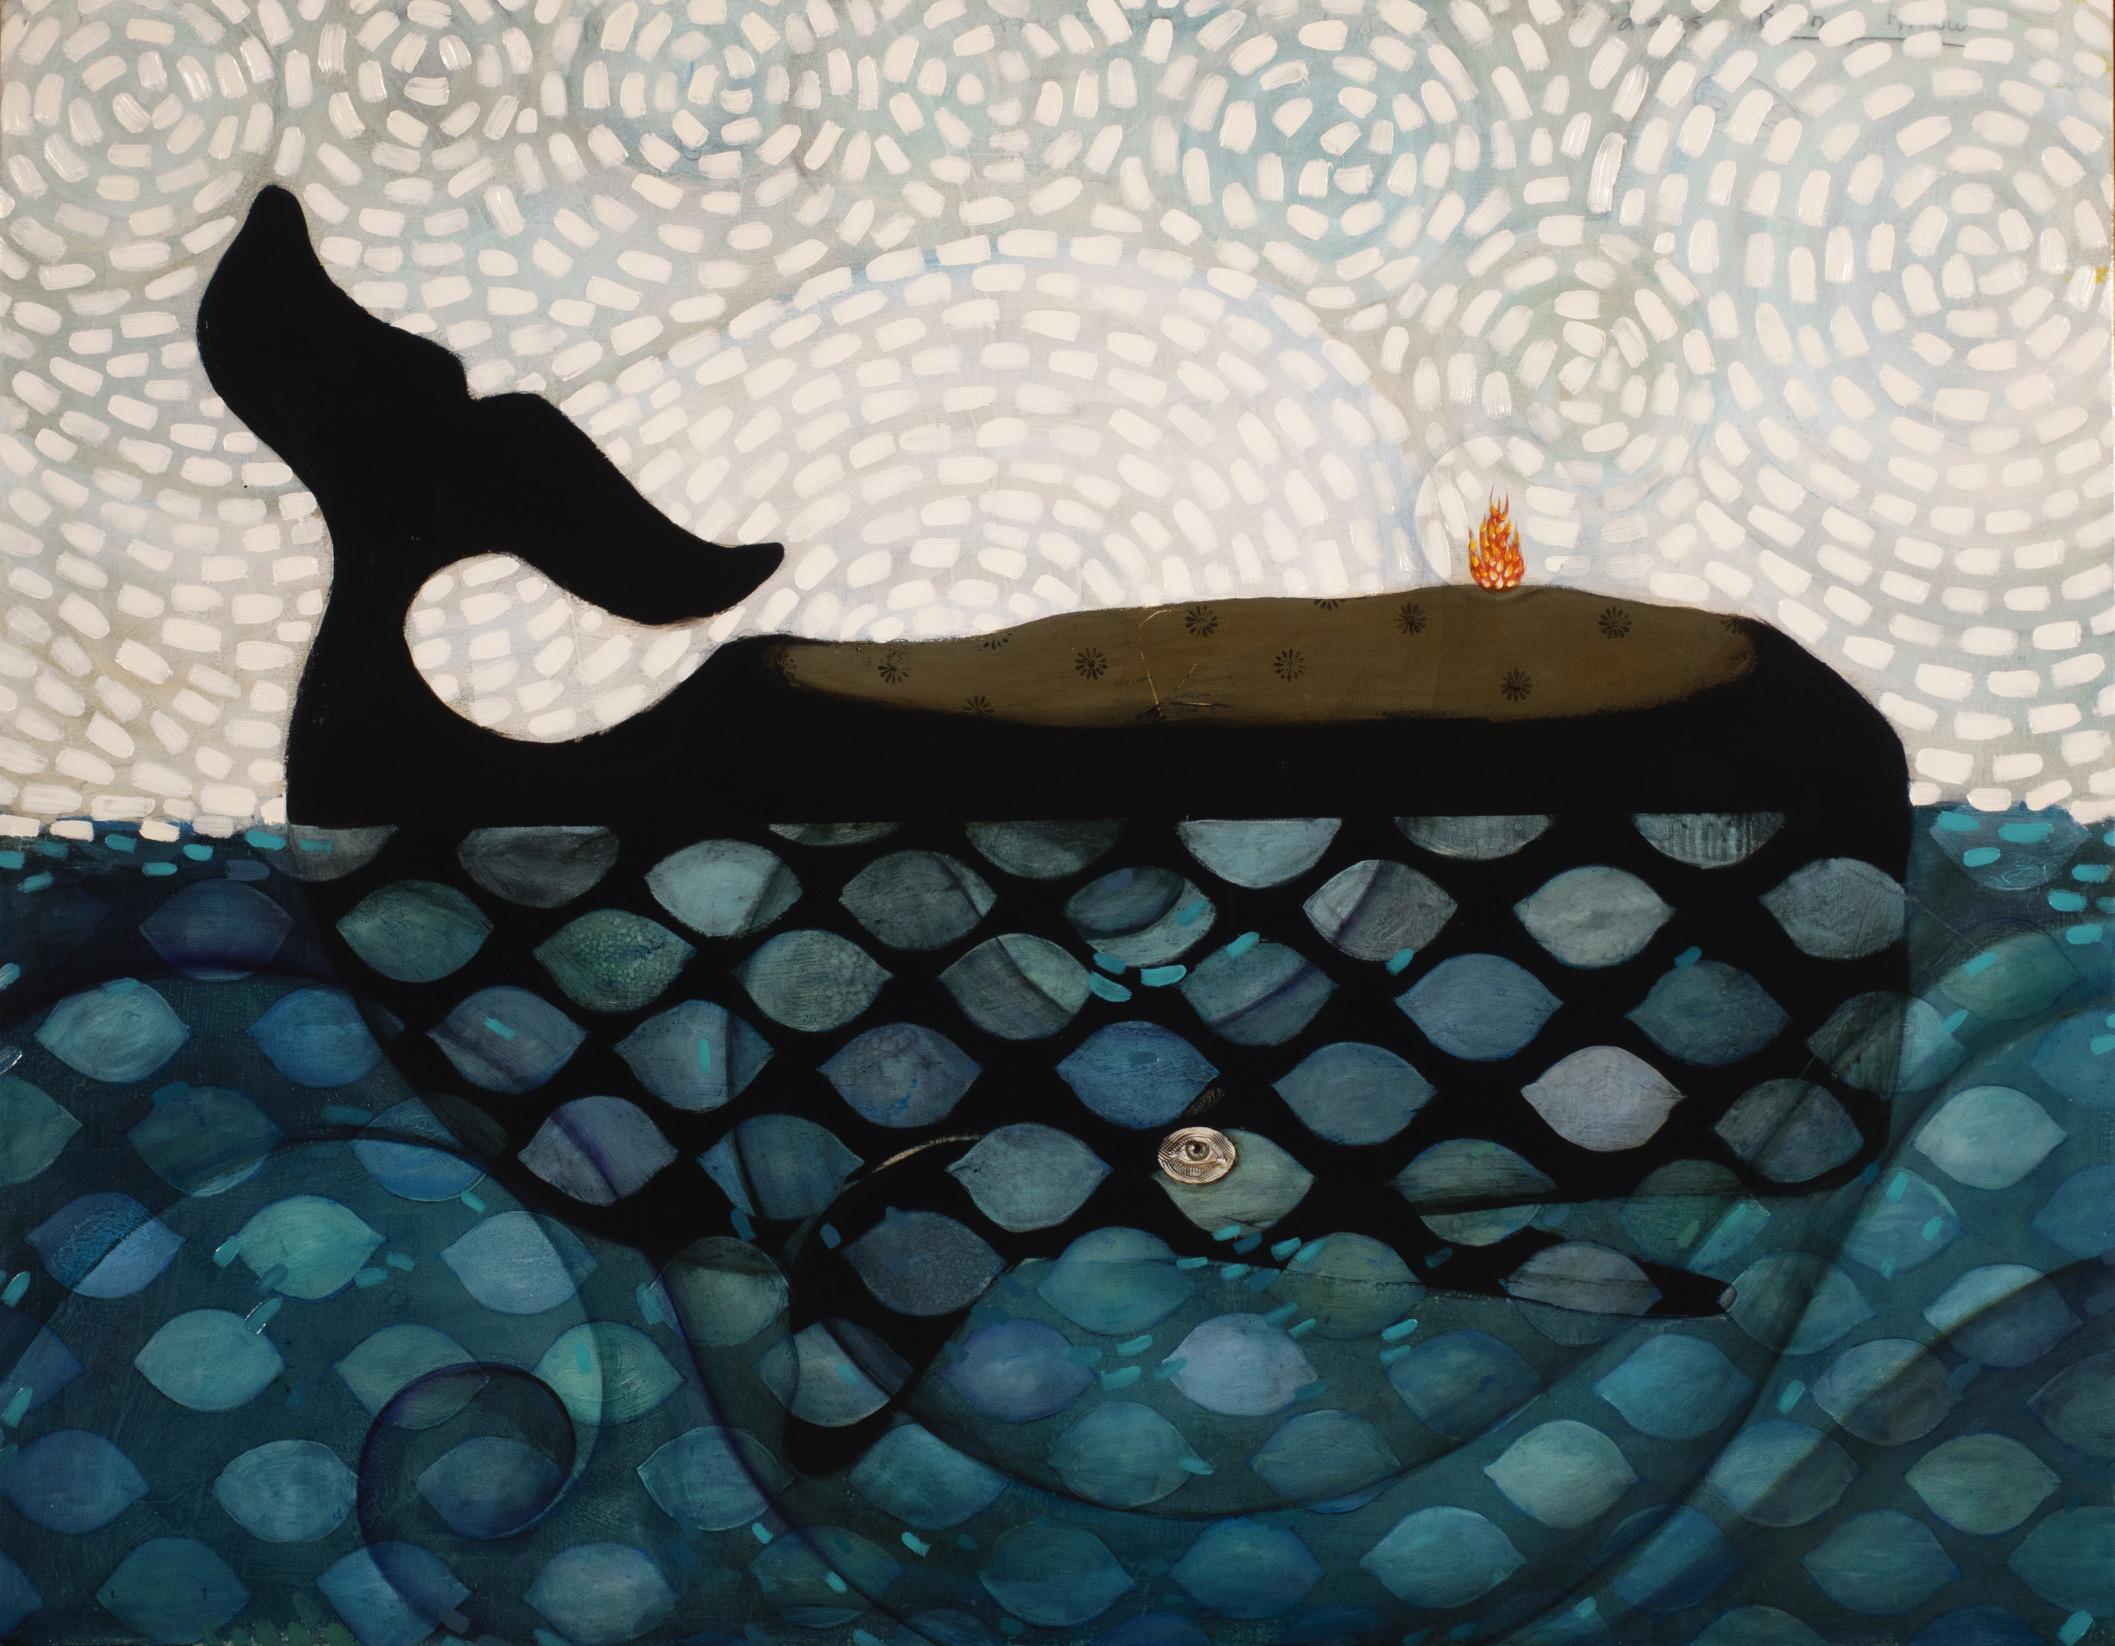 Animal Painting Michele Mikesell - Jasconius la baleine, grande peinture à l'huile d'une baleine, palette de couleurs bleues et design